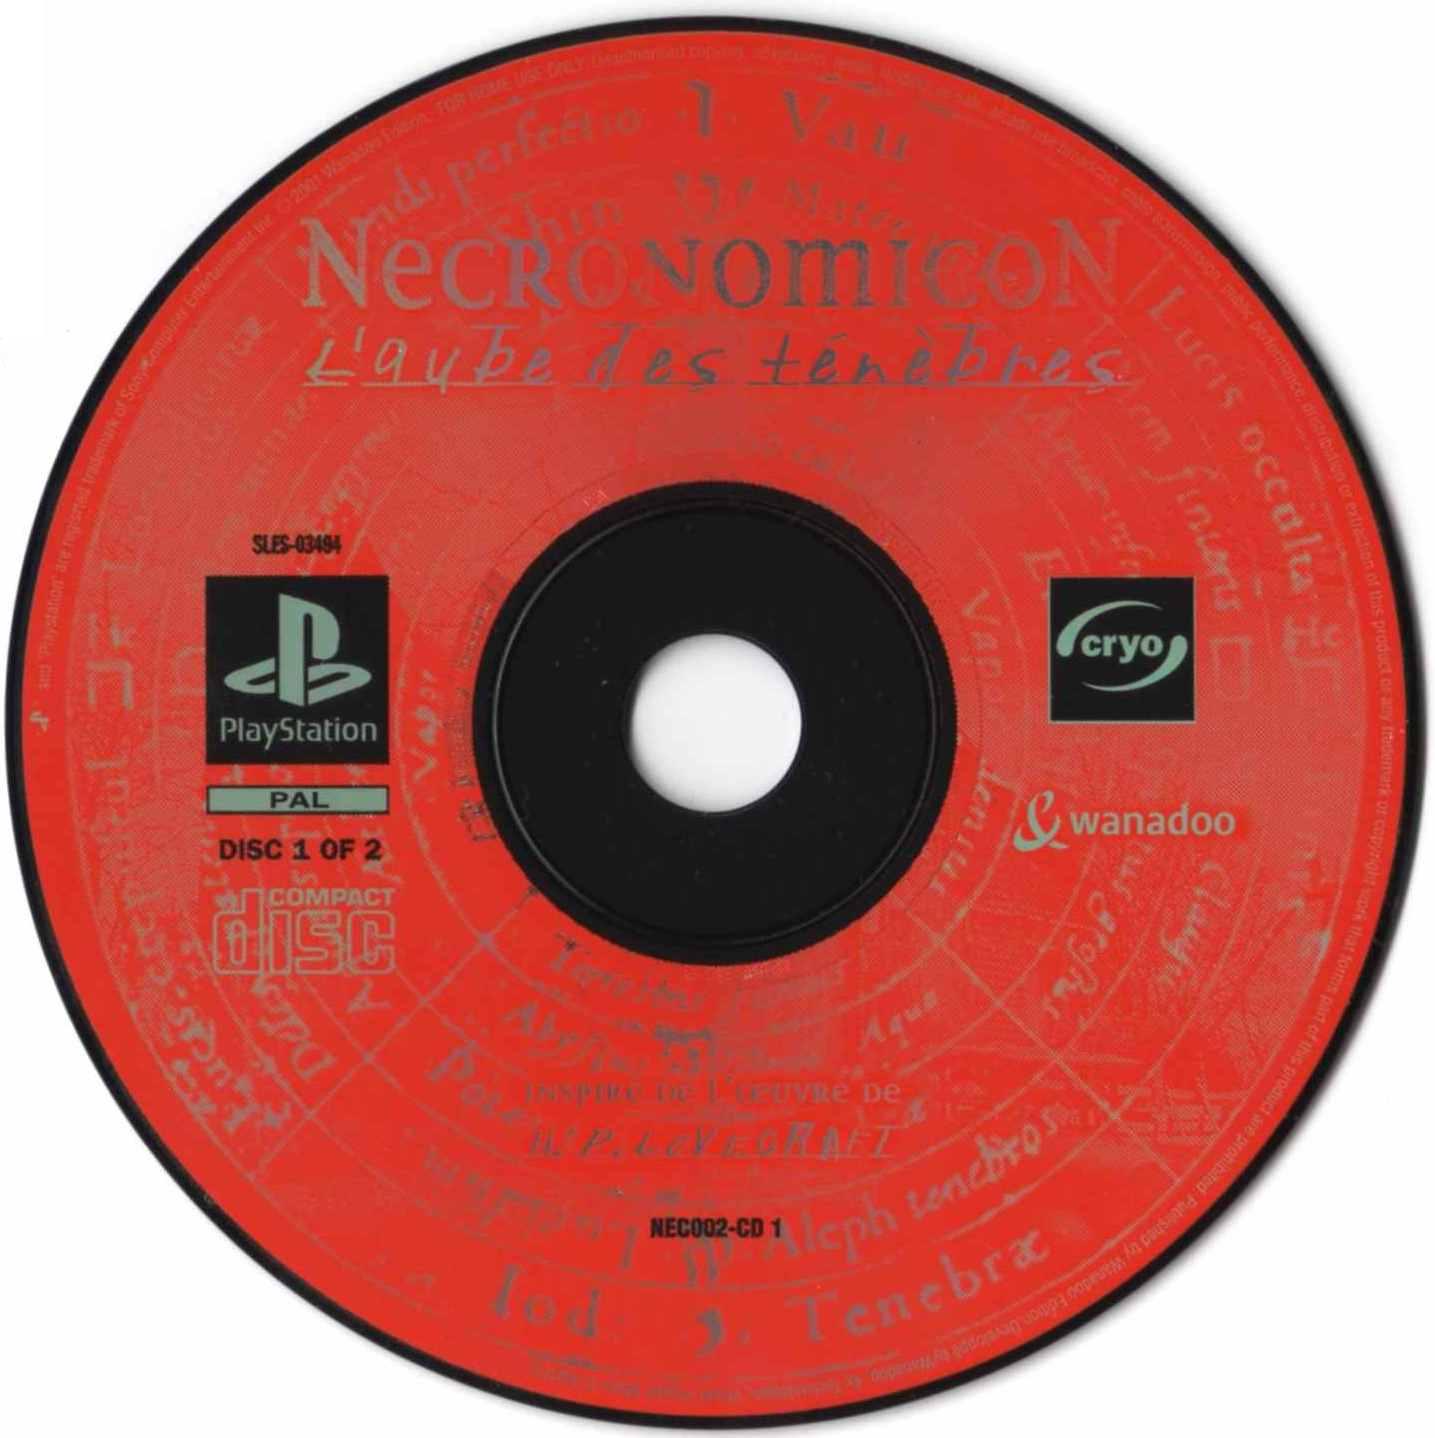 Necronomicon PSX cover